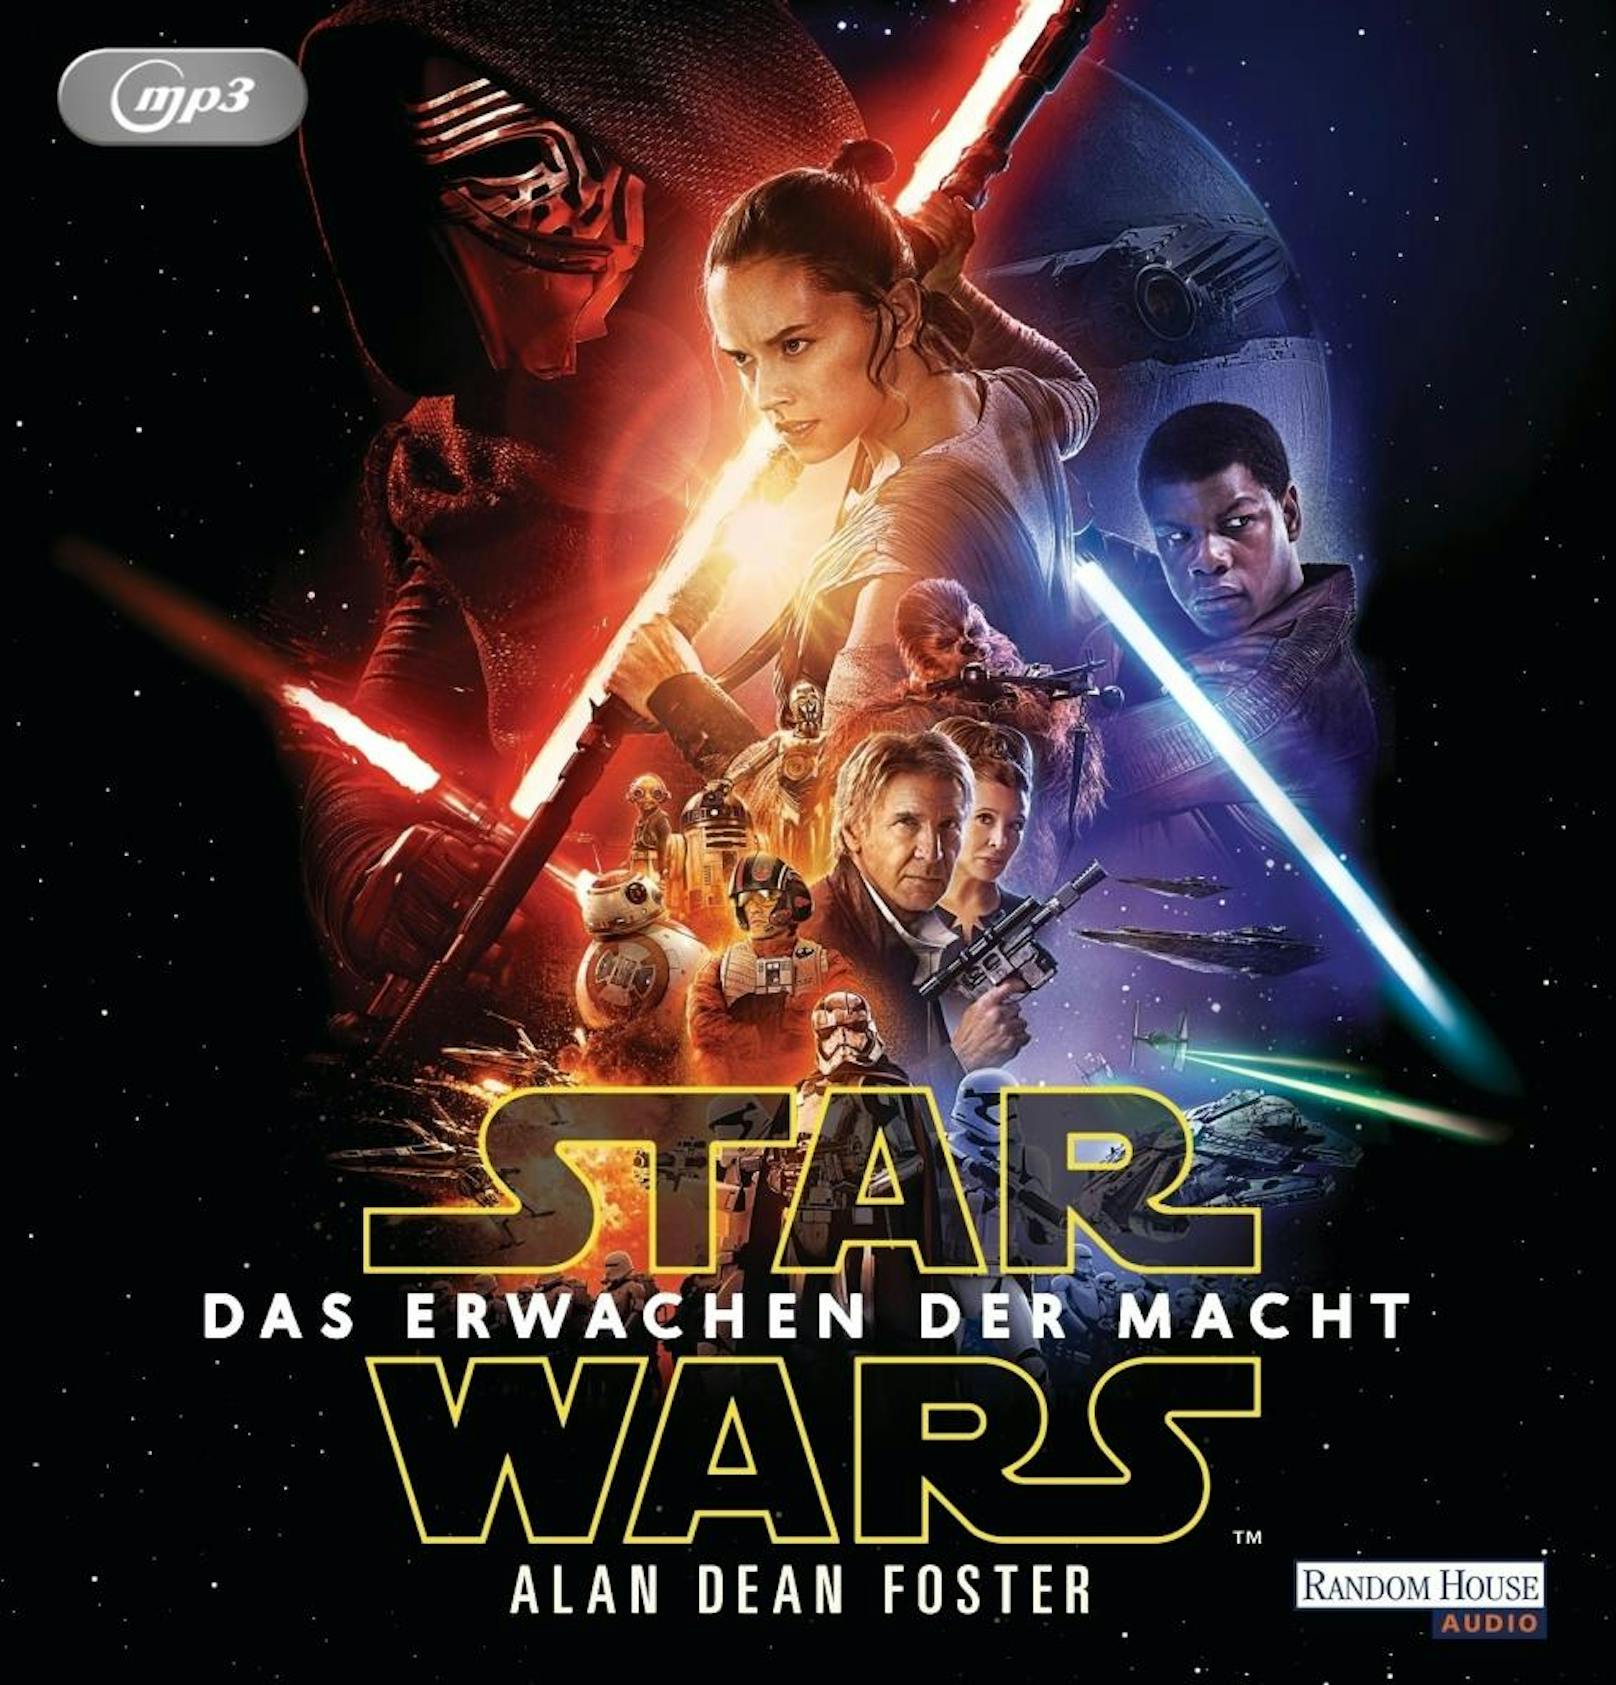 "Star Wars: Das Erwachen der Macht"